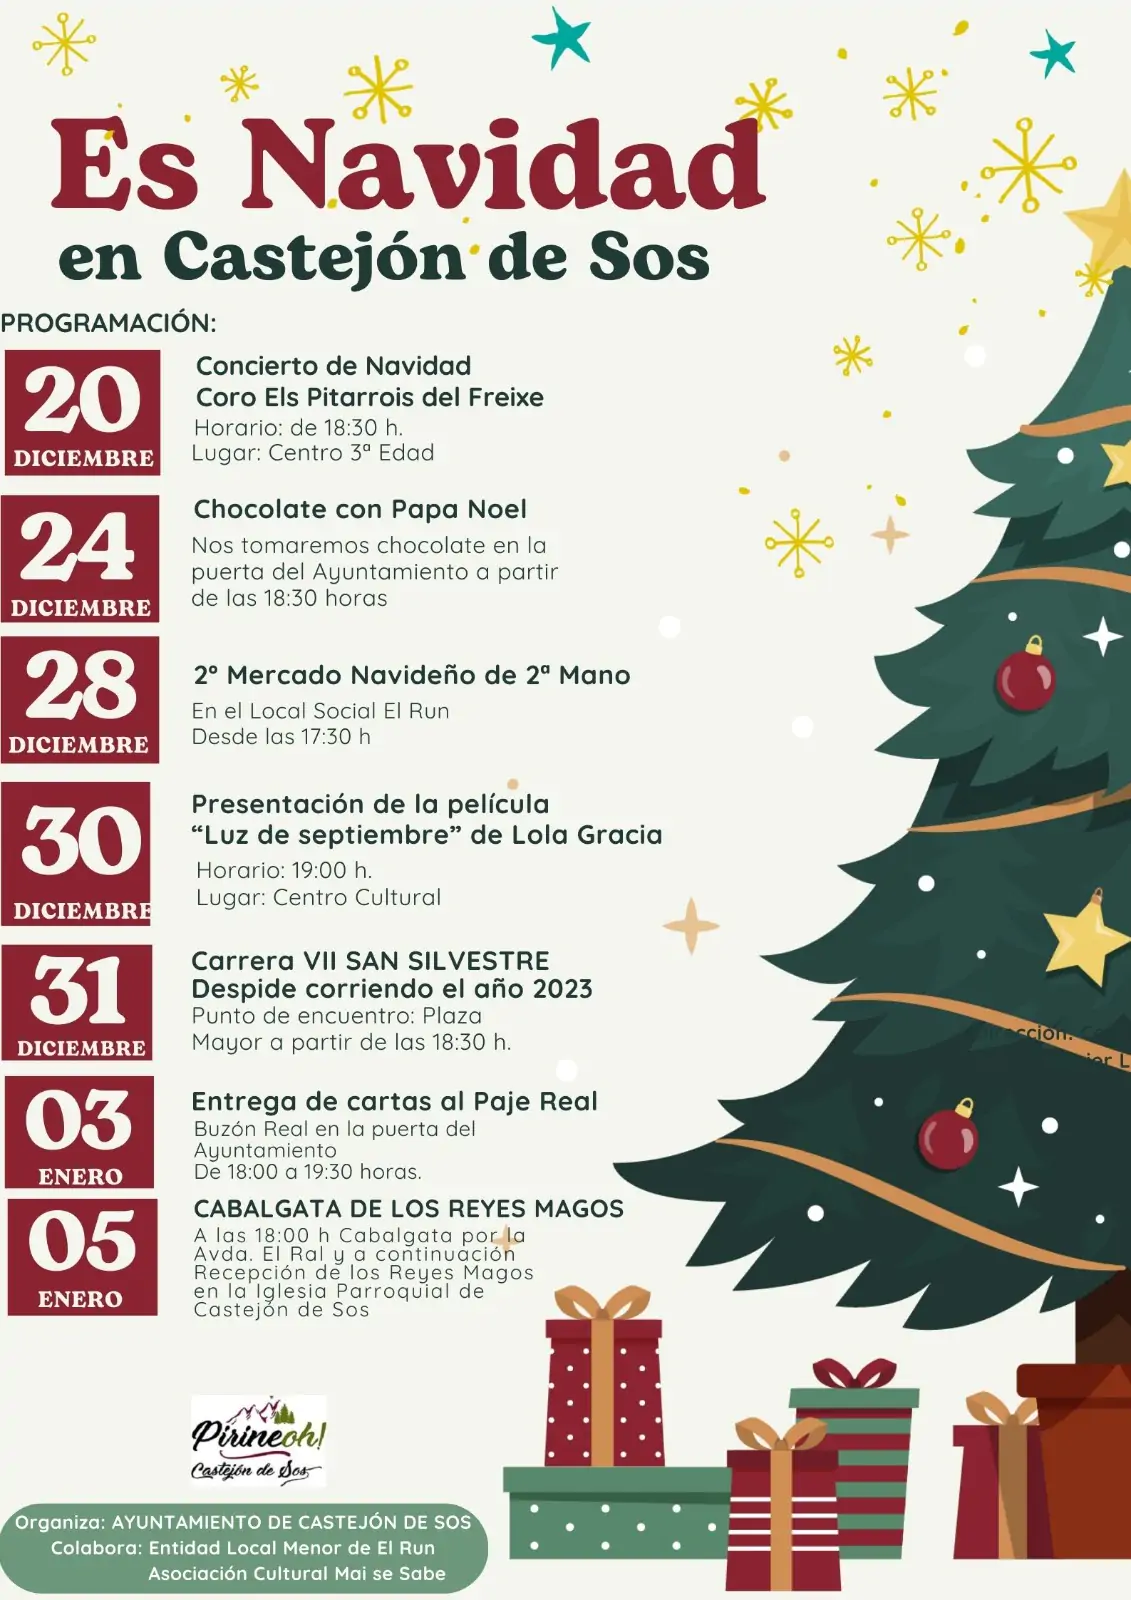 Es Navidad en Castejón de Sos | enBenas.com